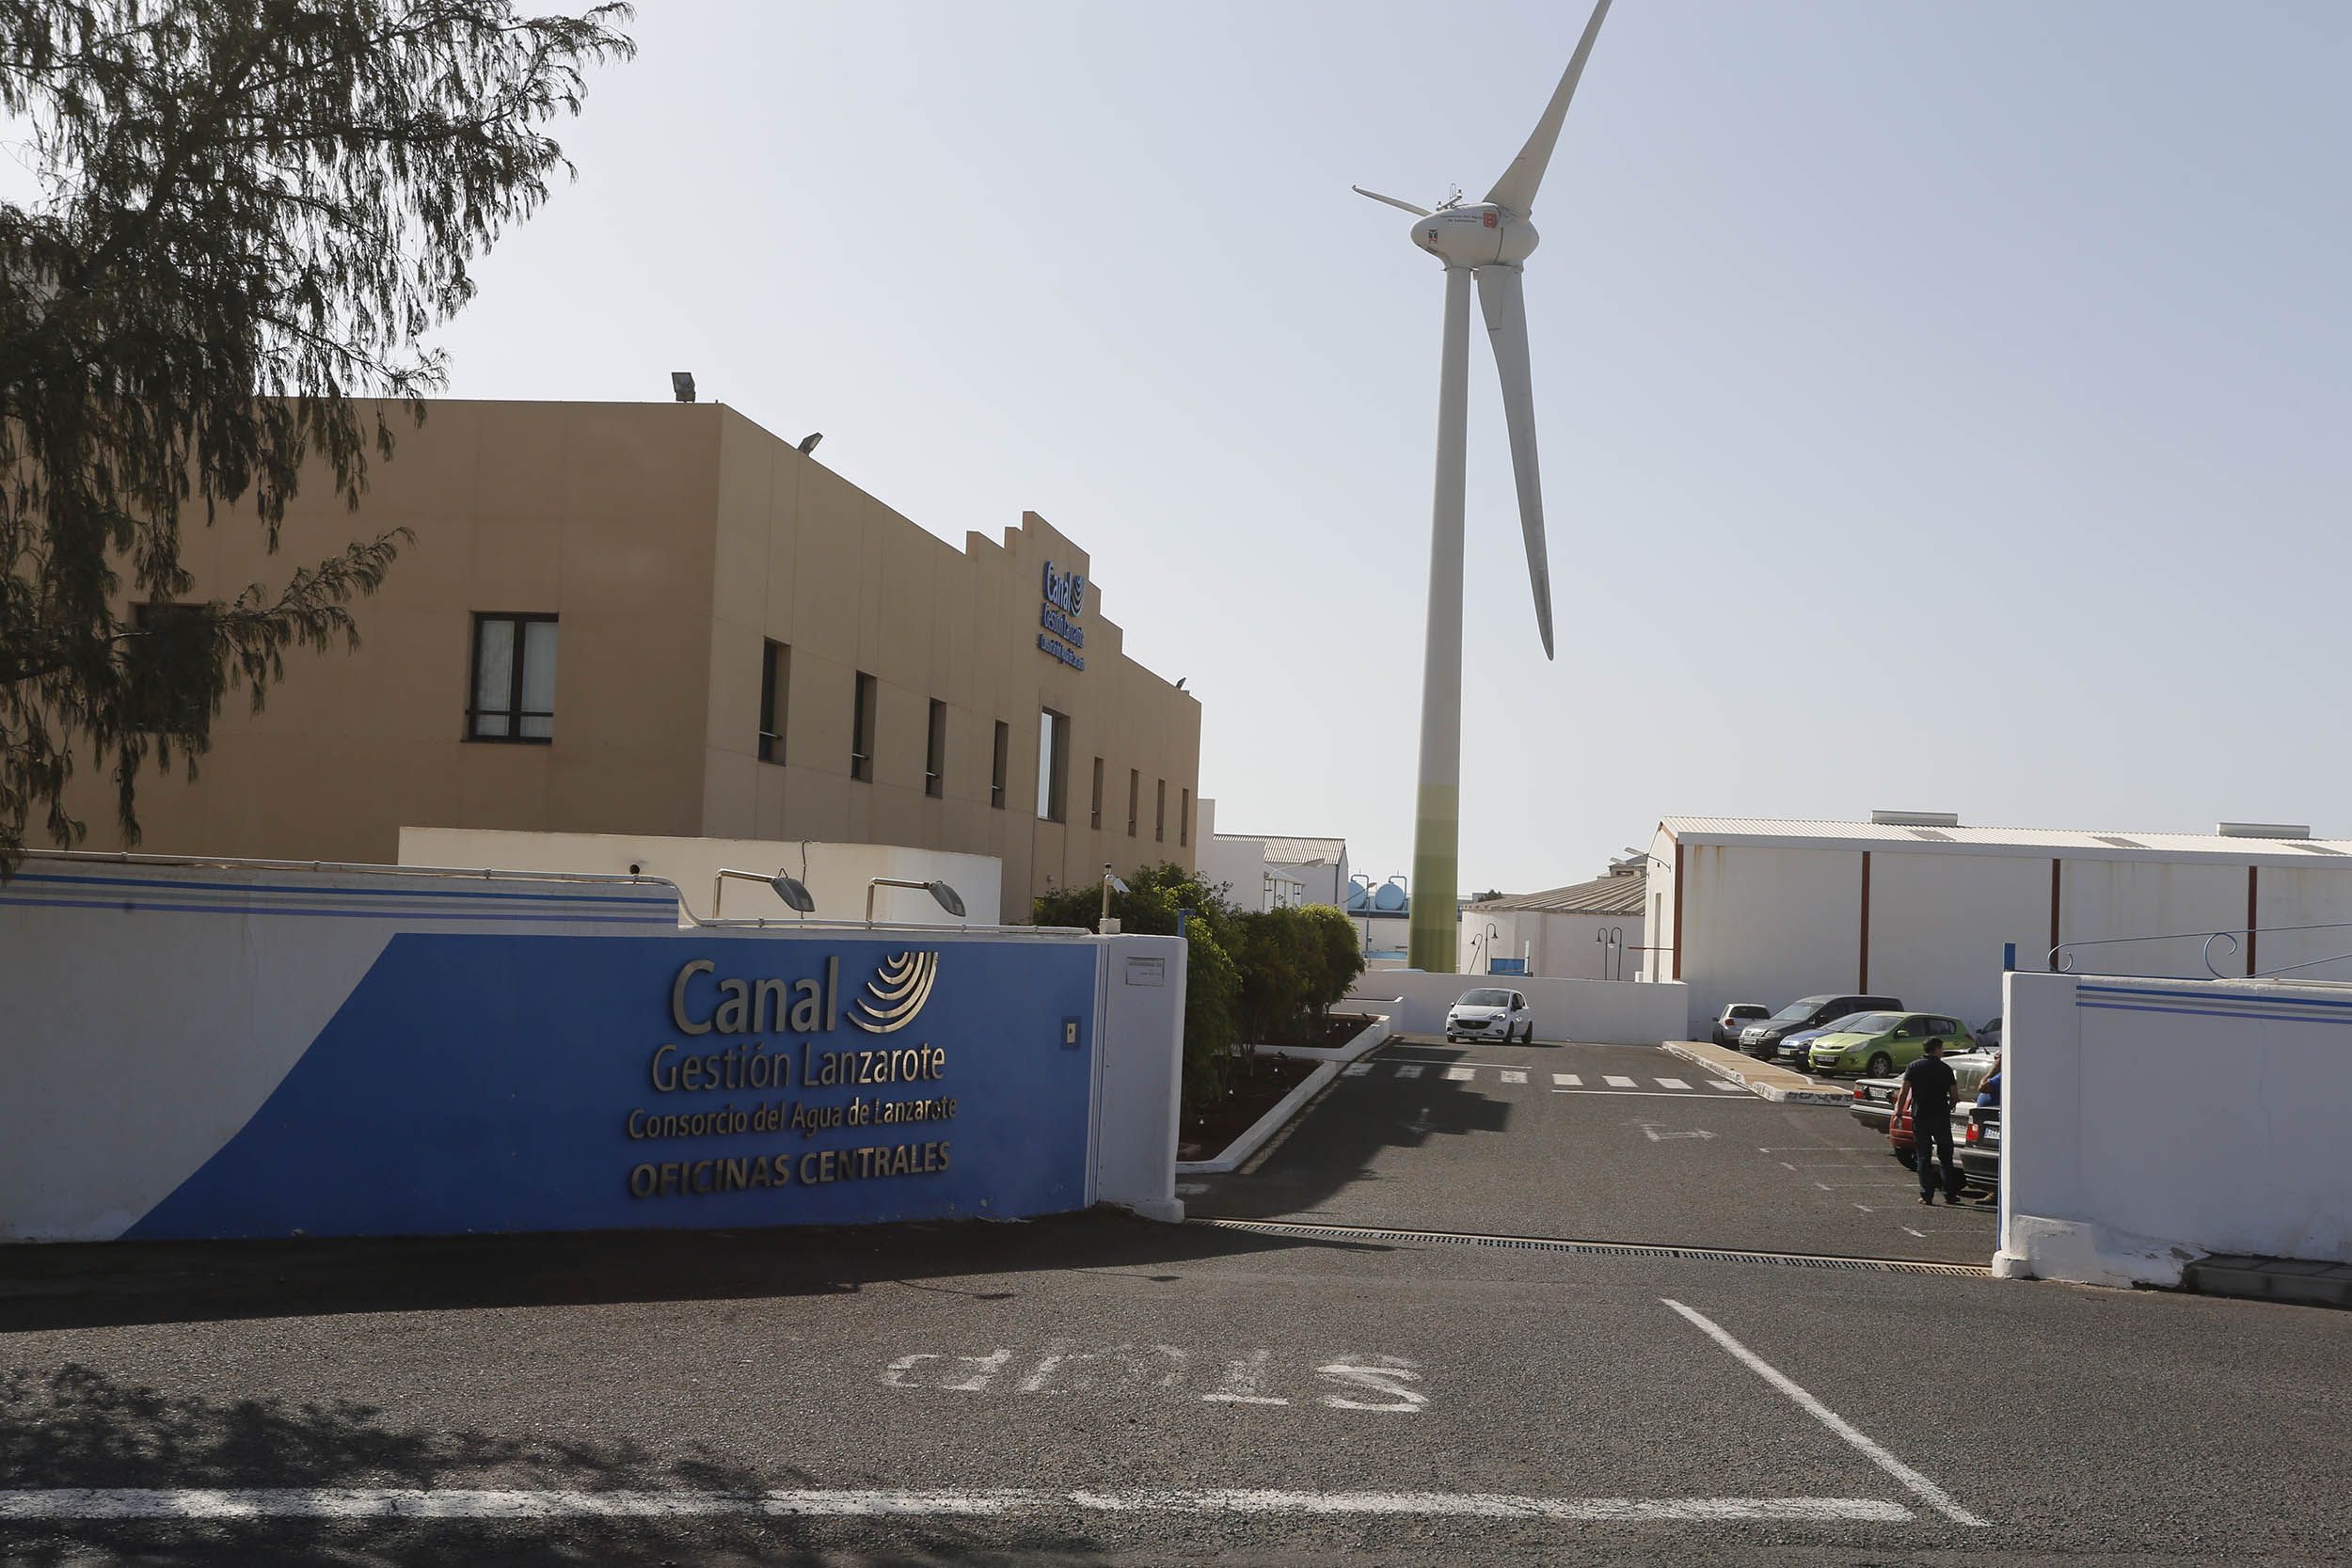 Oficina central de Canal Gestión, empresa encargada de la gestión del agua en Lanzarote. Foto: José Luis Carrasco.